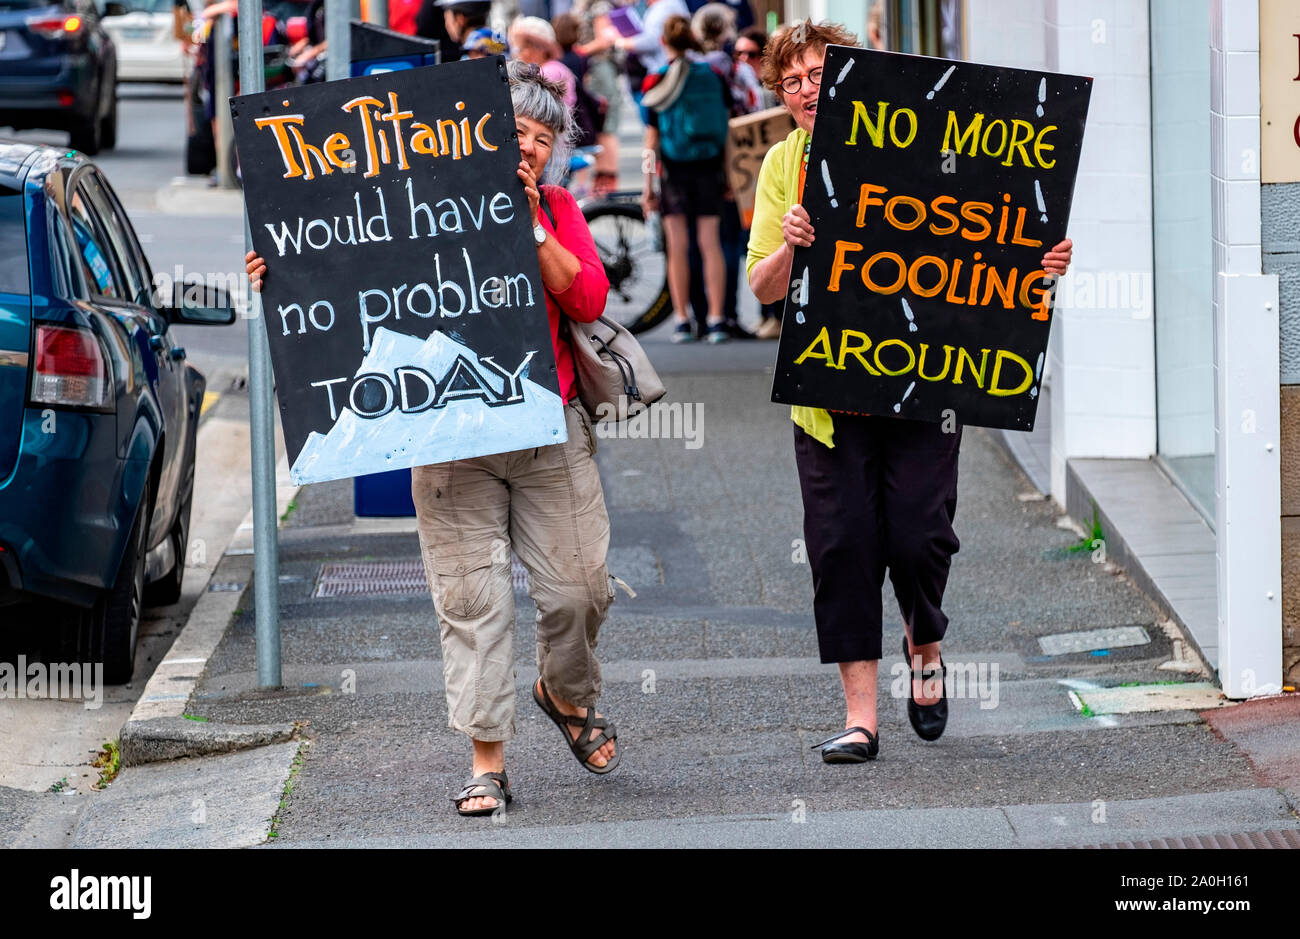 Plus de 20 000 personnes, parents et enfants ont participé à la grève du climat des écoles à l'extérieur du Parlement à Hobart, Tasmanie Vendredi 20 Septembre Banque D'Images